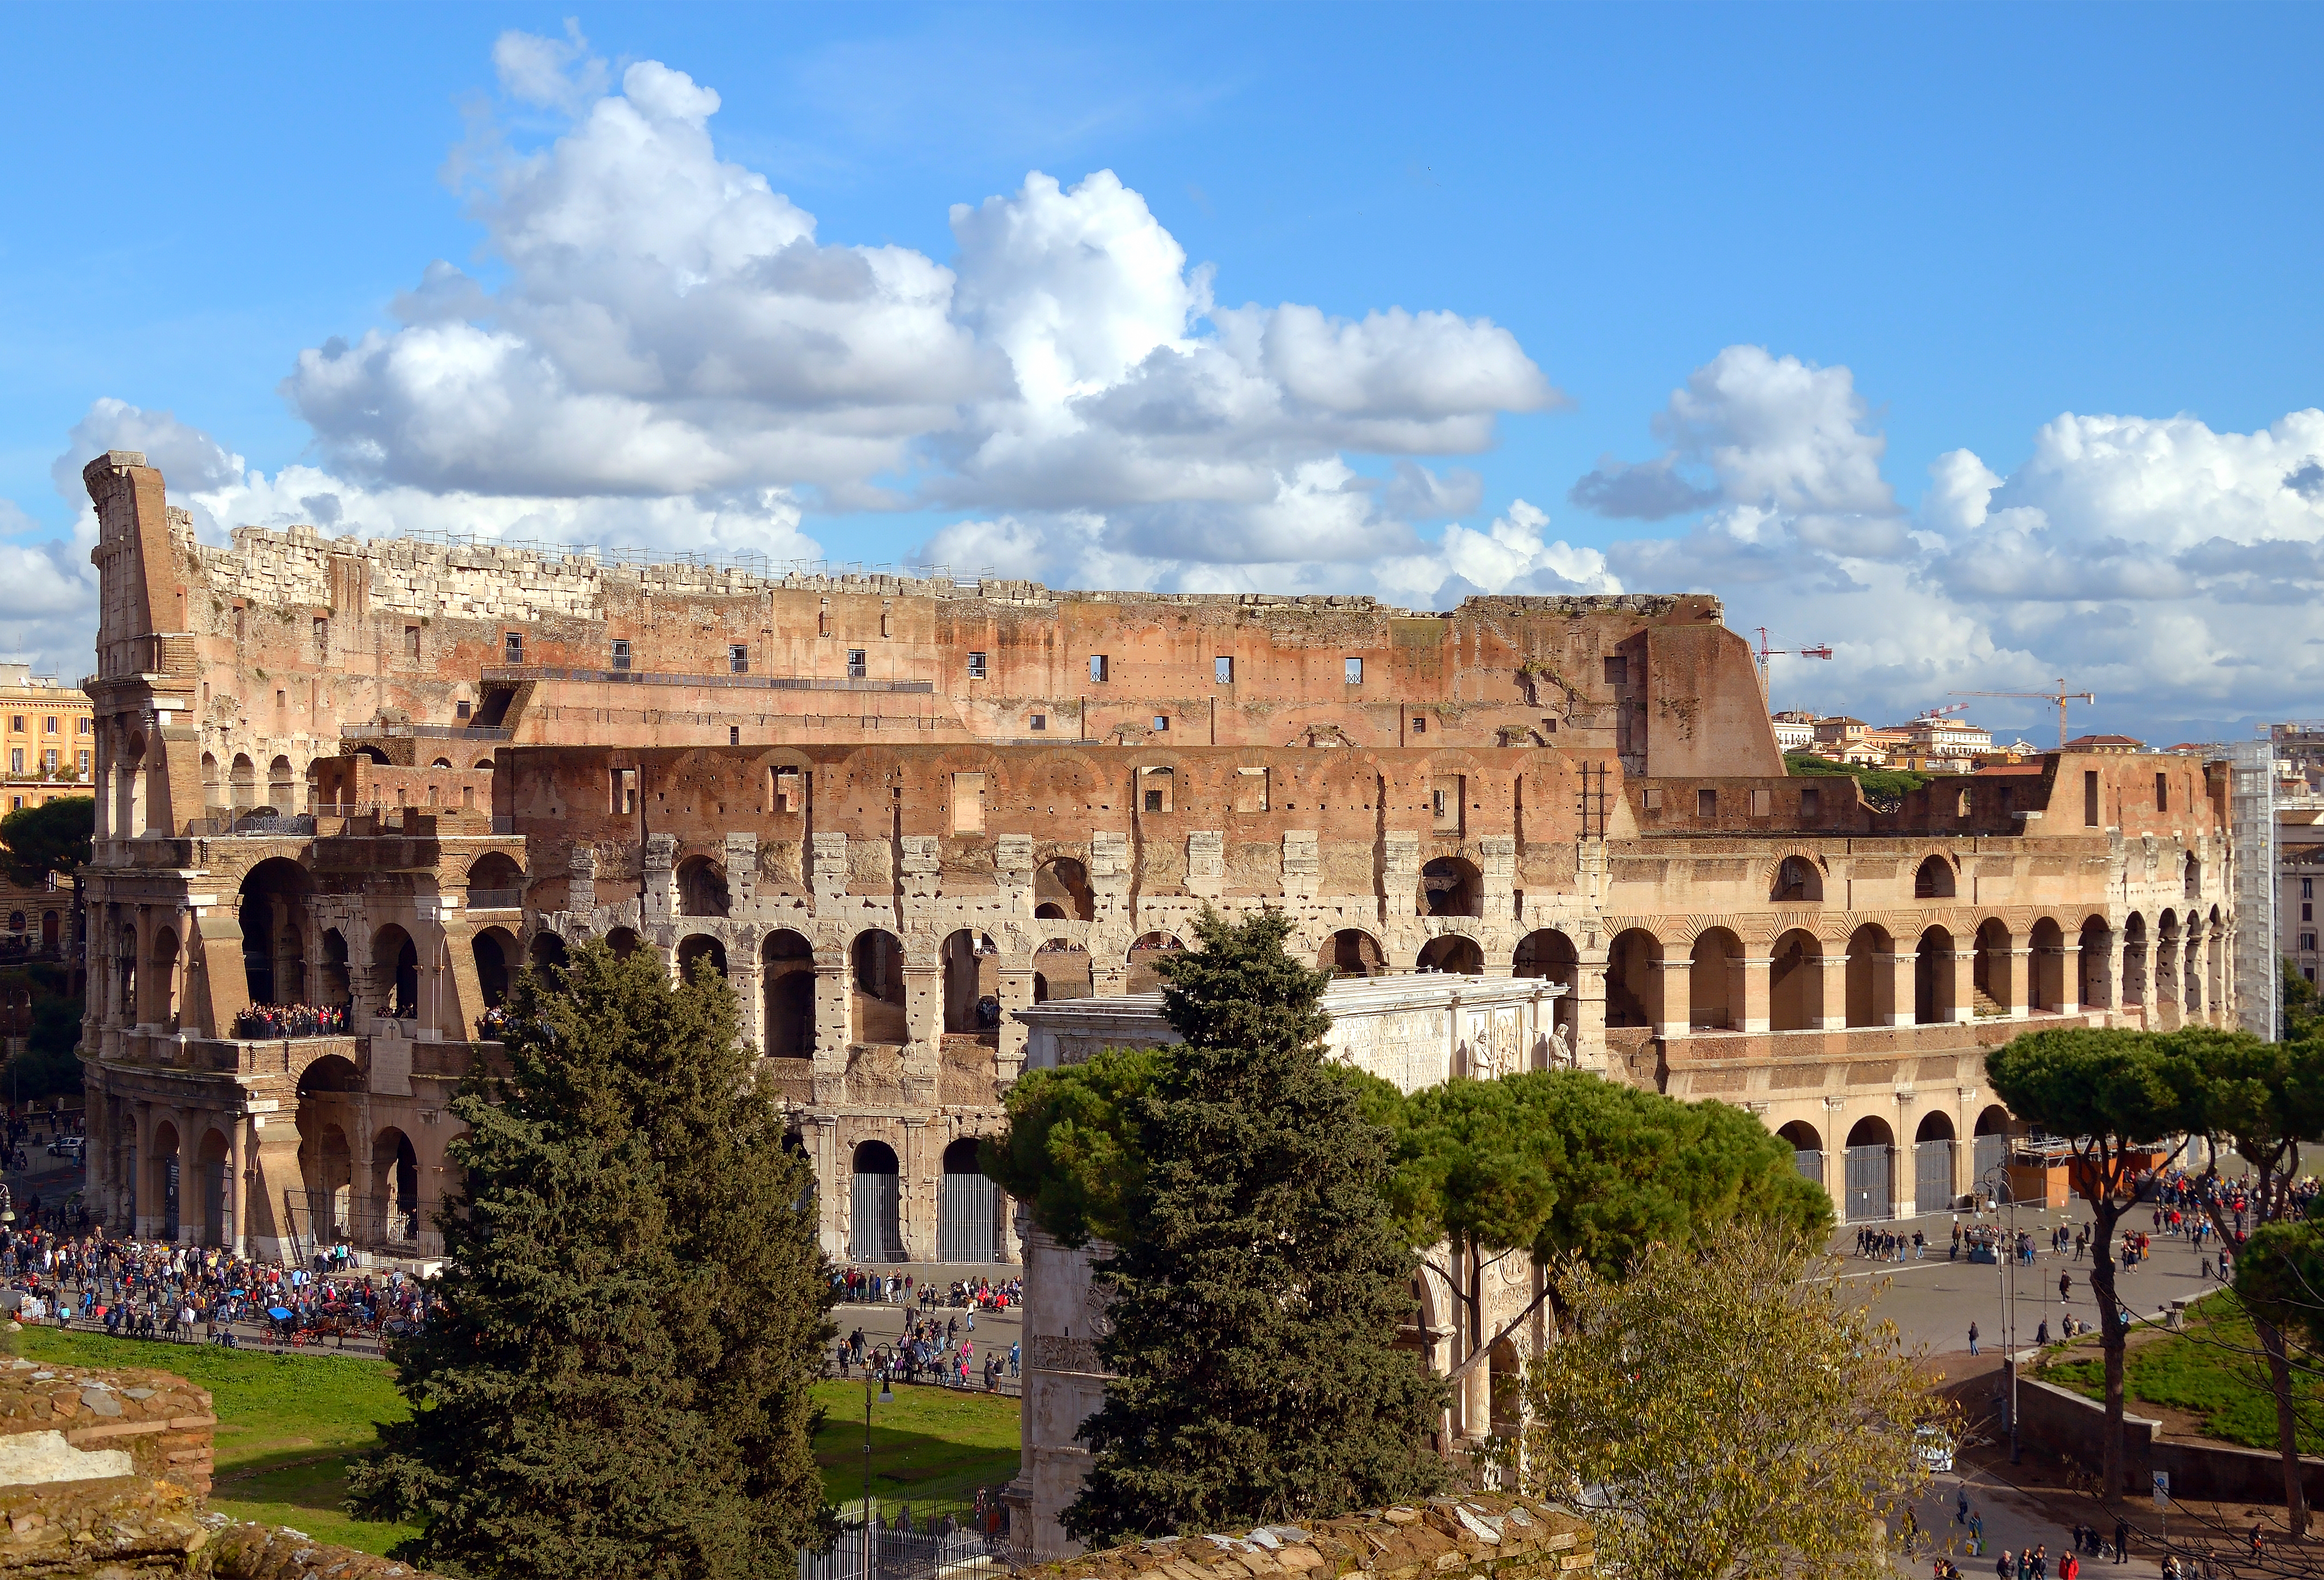 Colosseum seen from Vigna Barberini